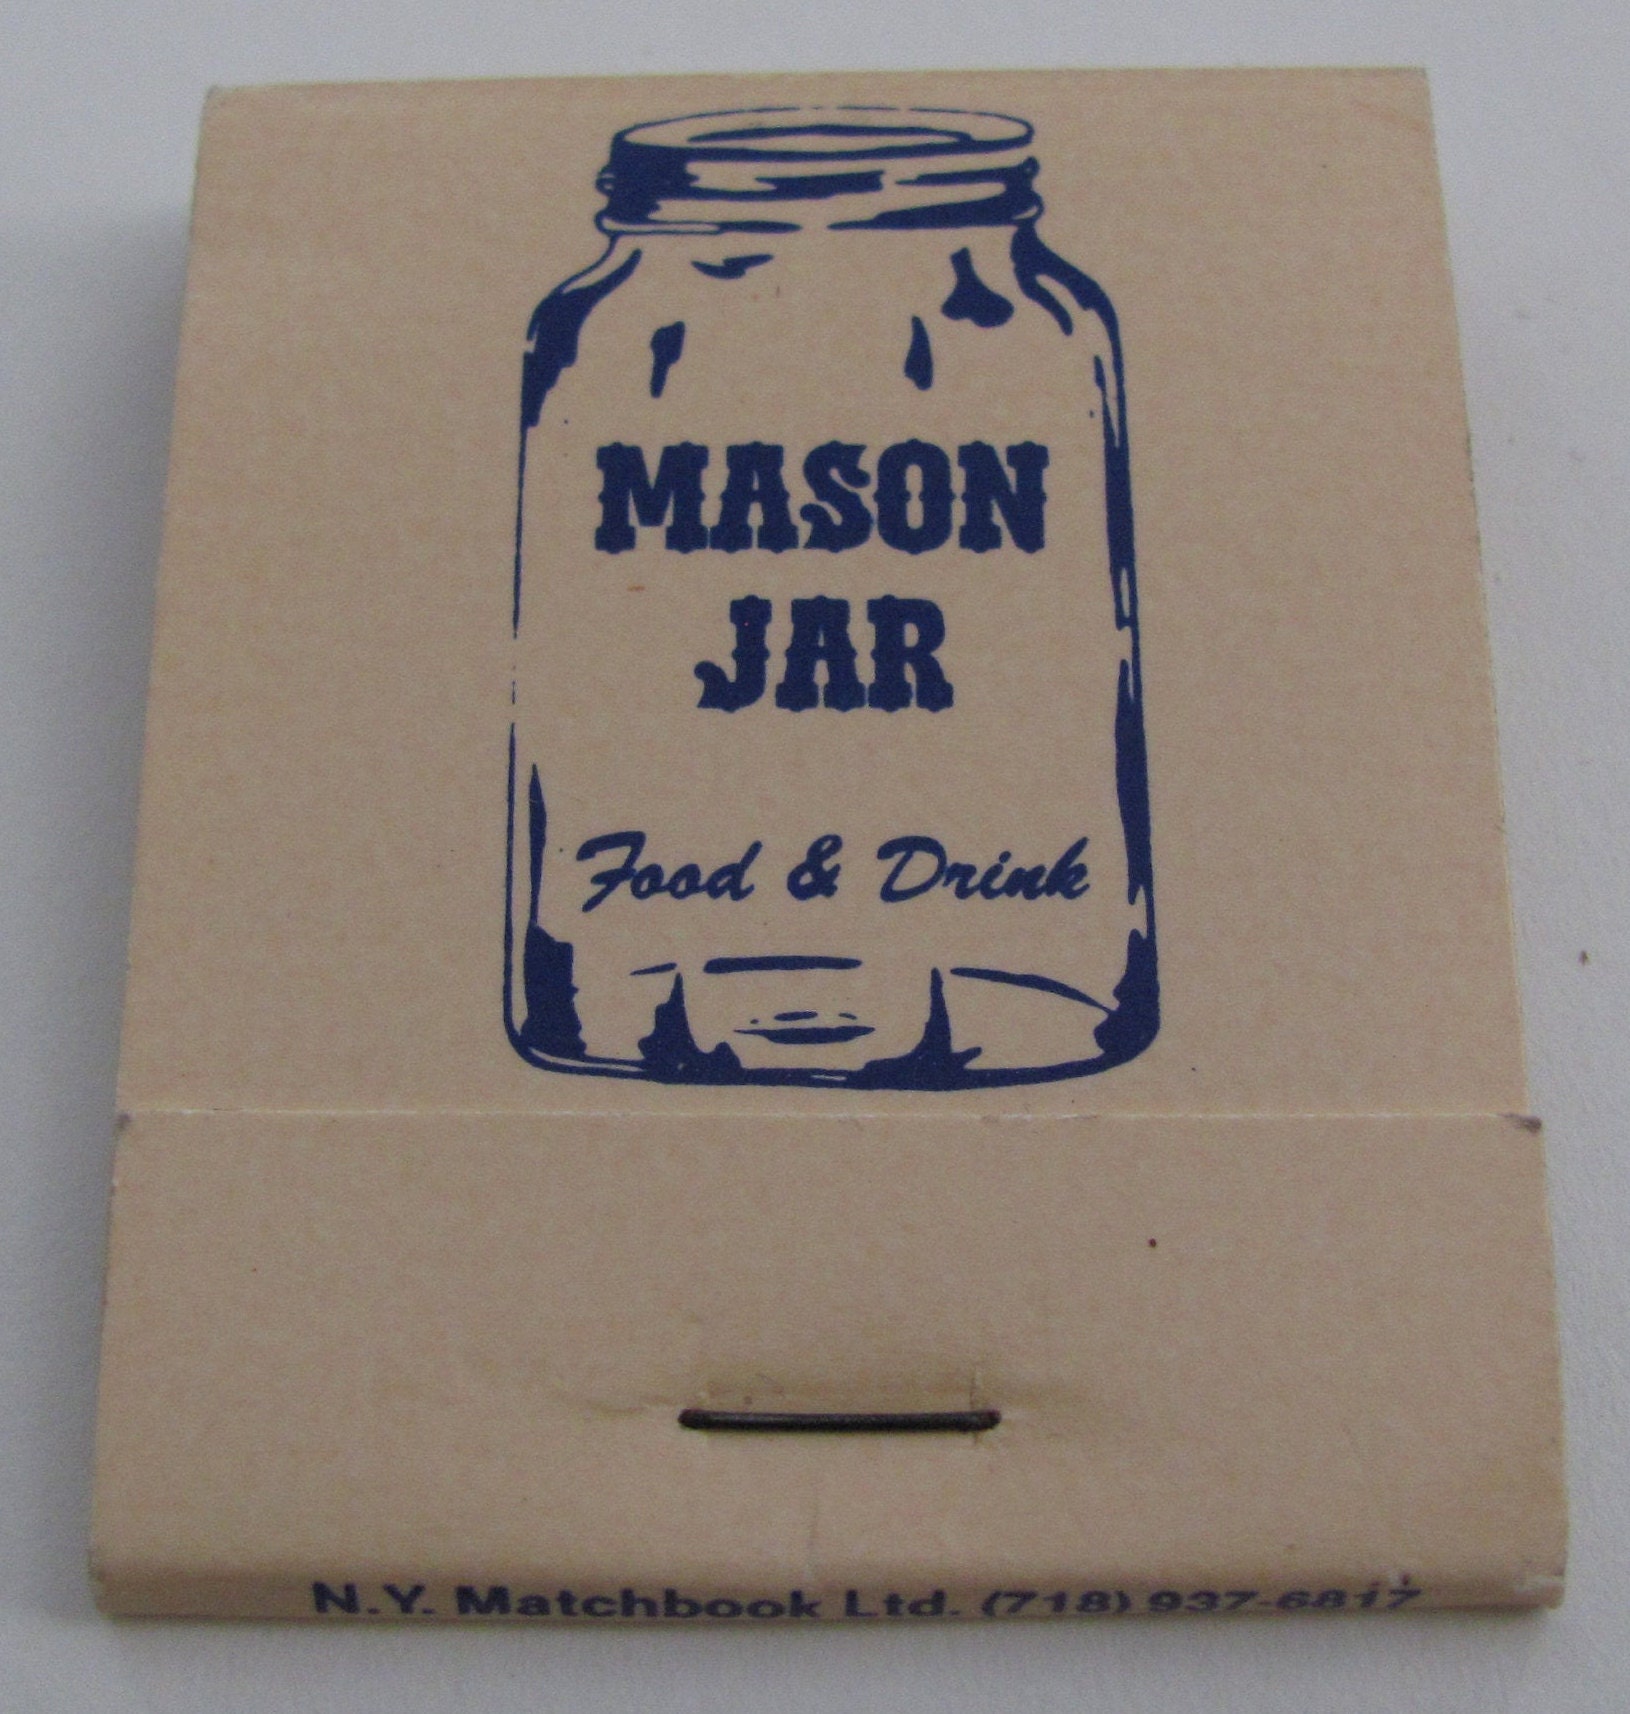 Mason Jar Family Restaurant and Bar - Restaurant in Mahwah, NJ